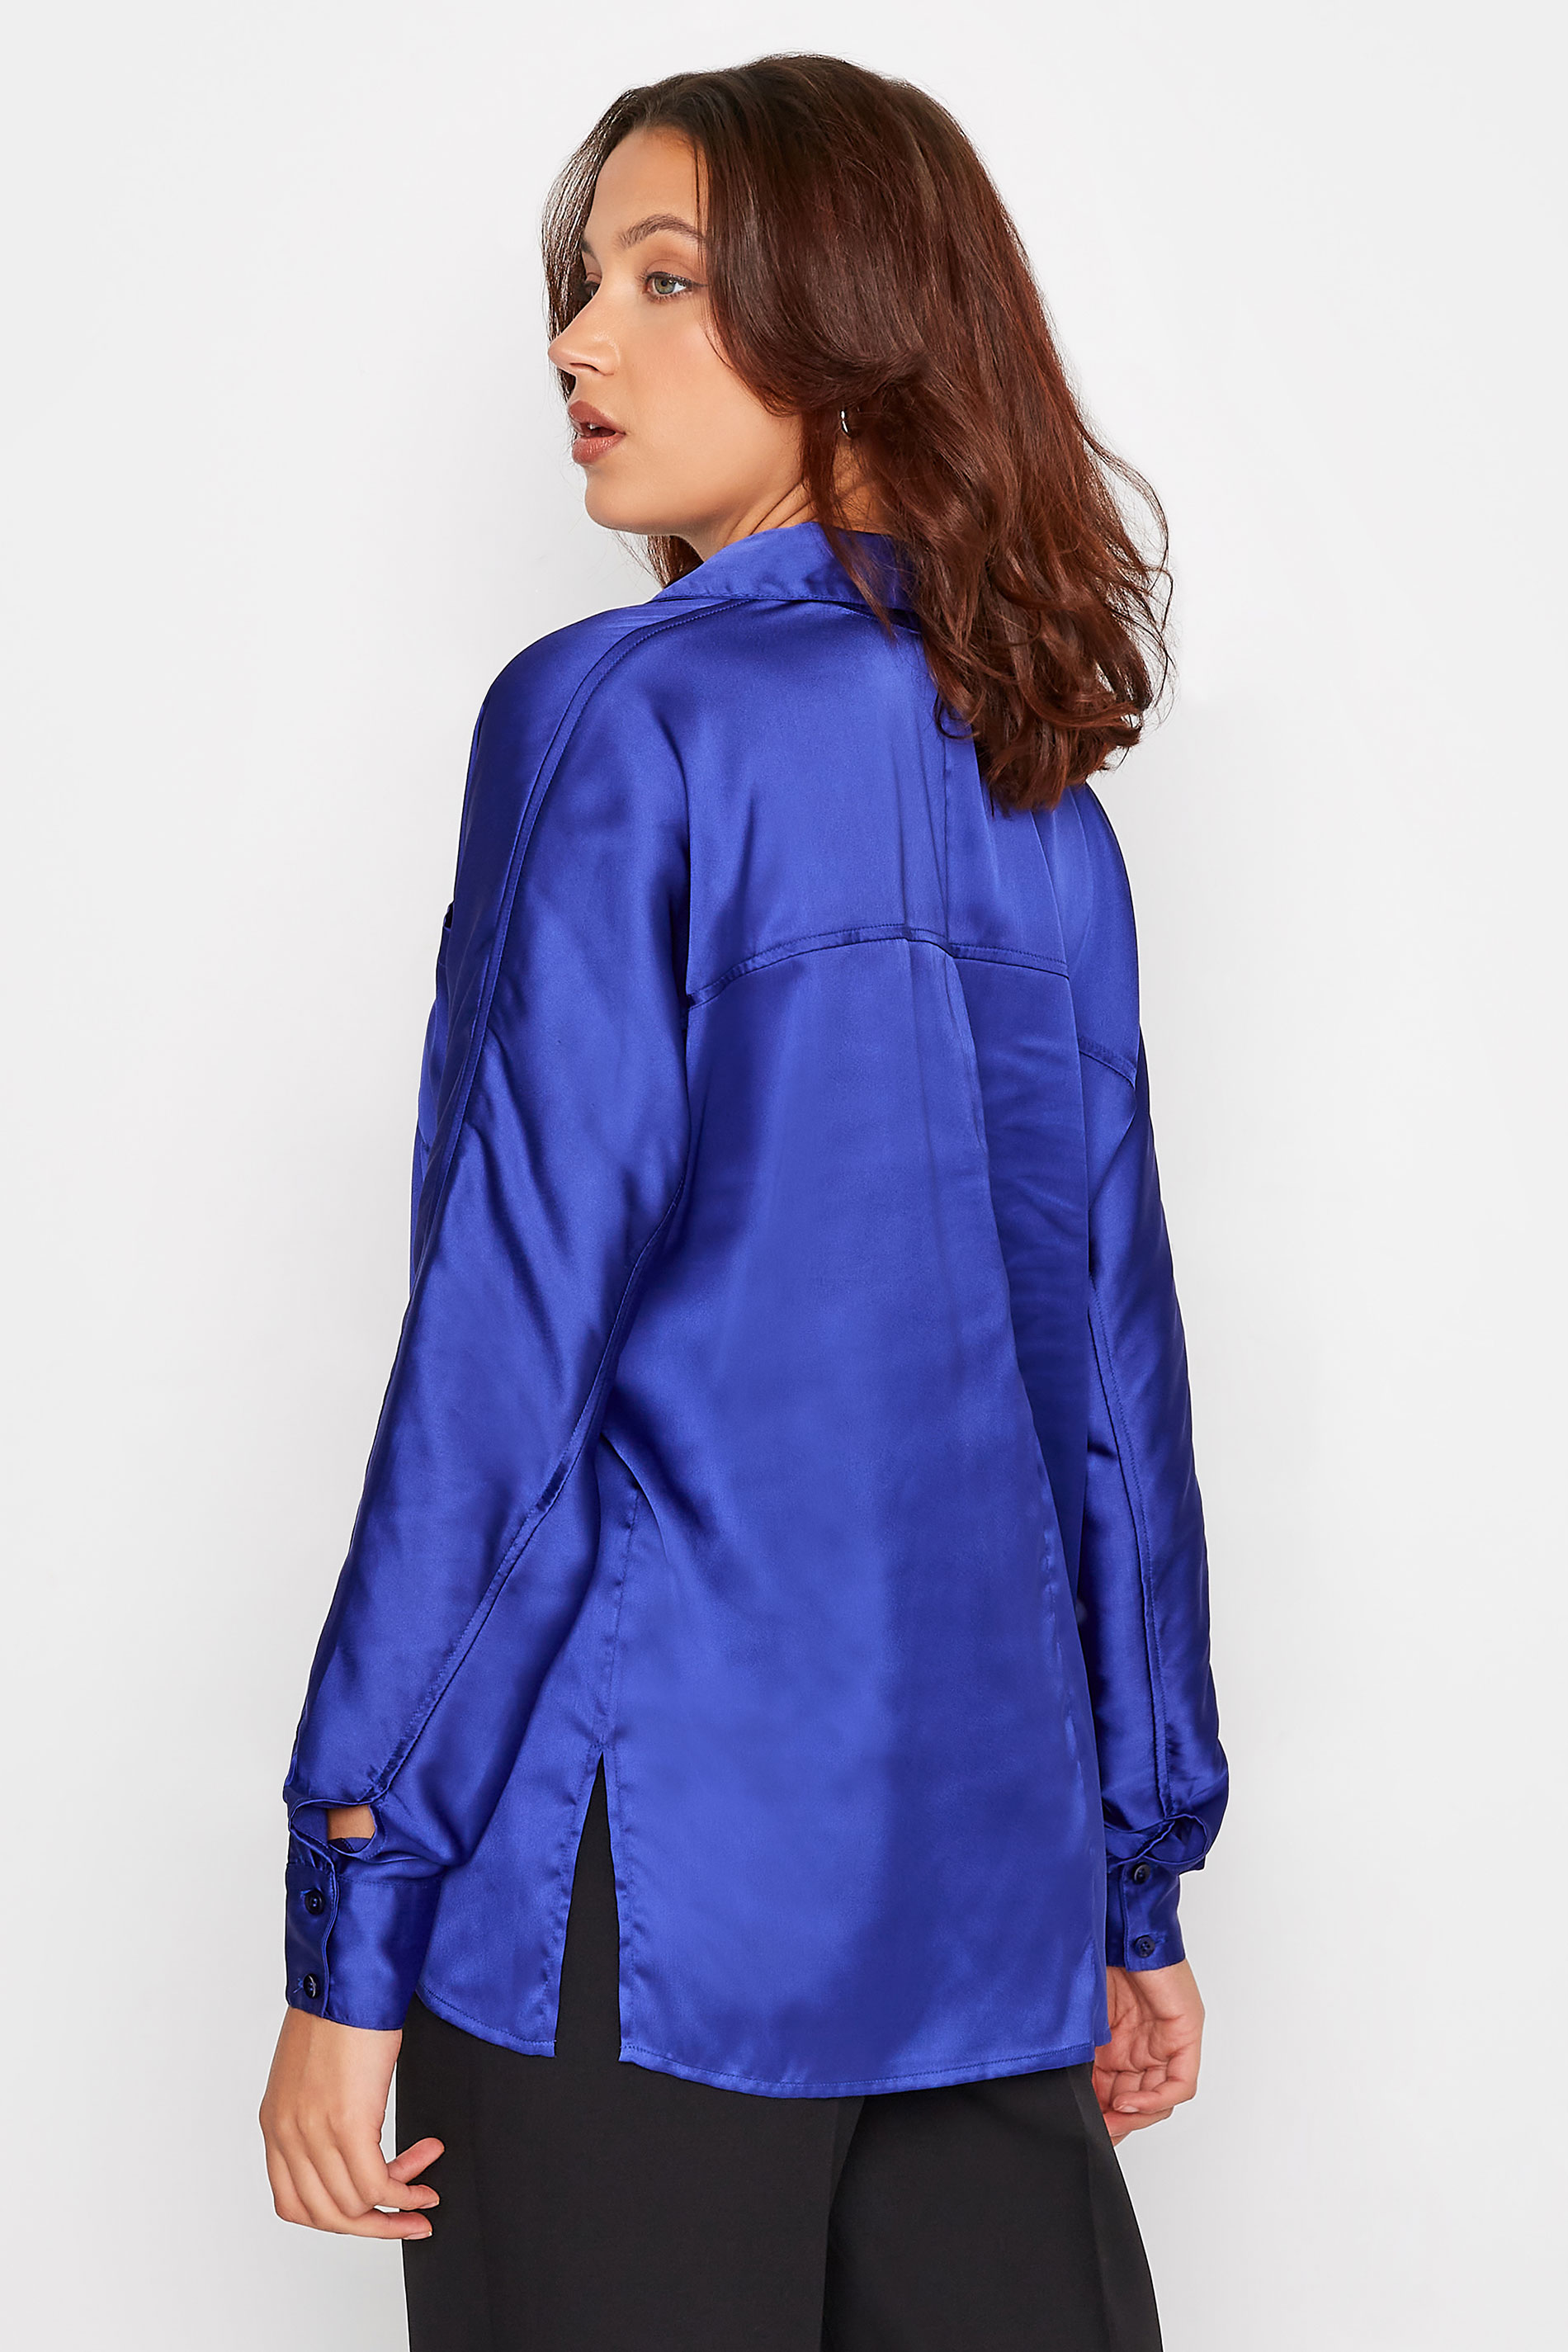 LTS Tall Cobalt Blue Satin Shirt | Long Tall Sally 3